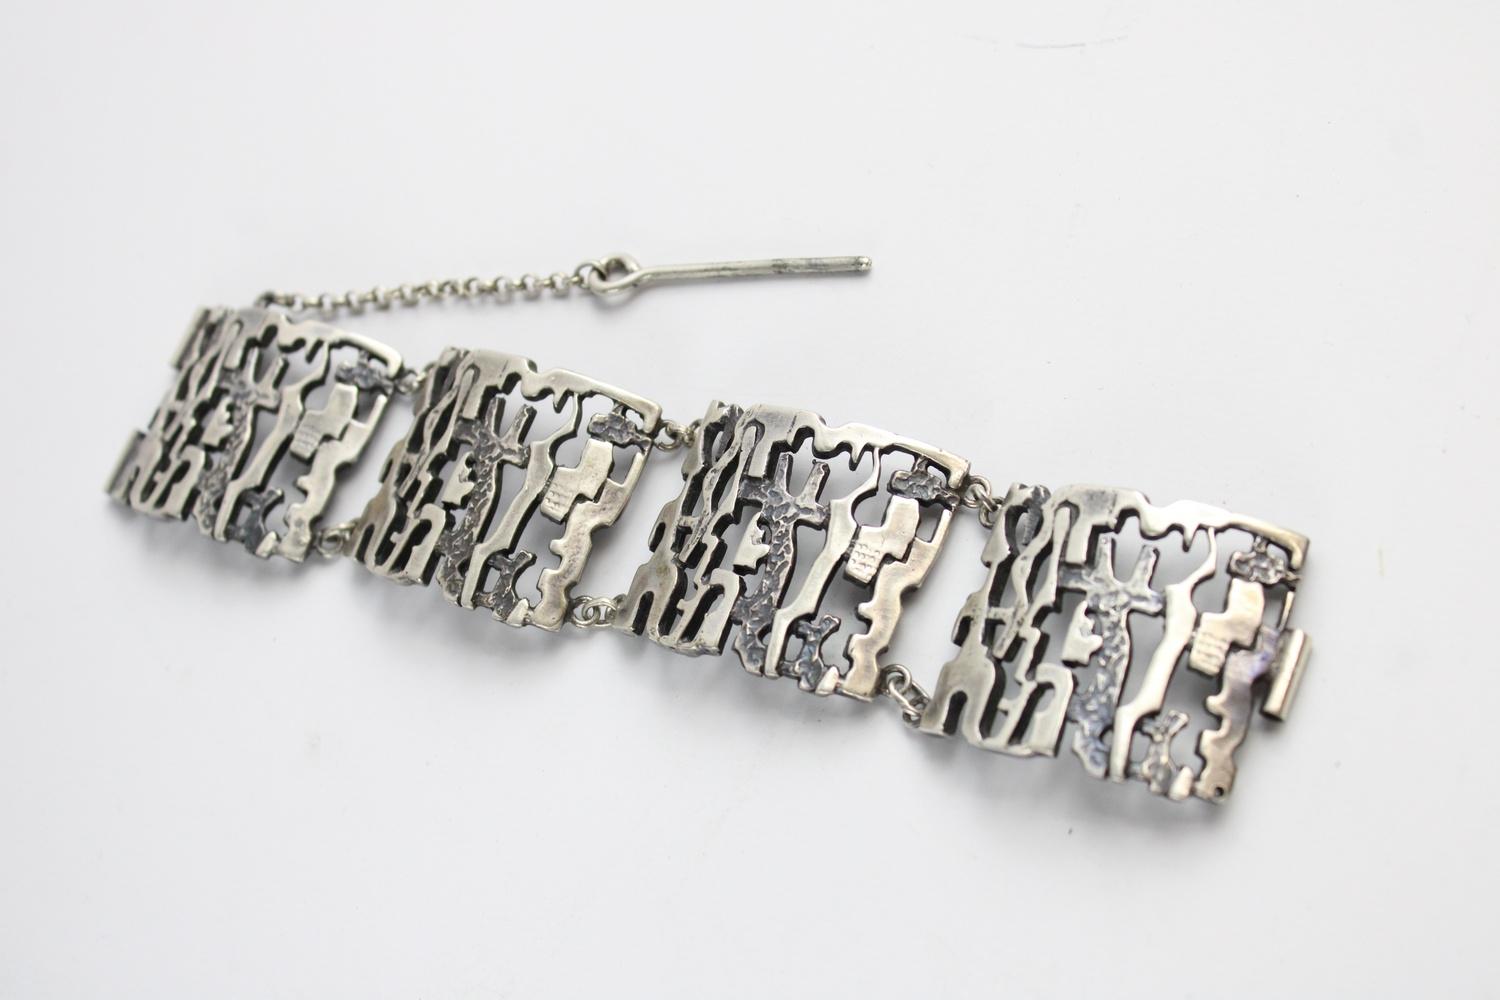 Vintage .835 silver textured modernist pendant necklace & bracelet set - Image 3 of 4